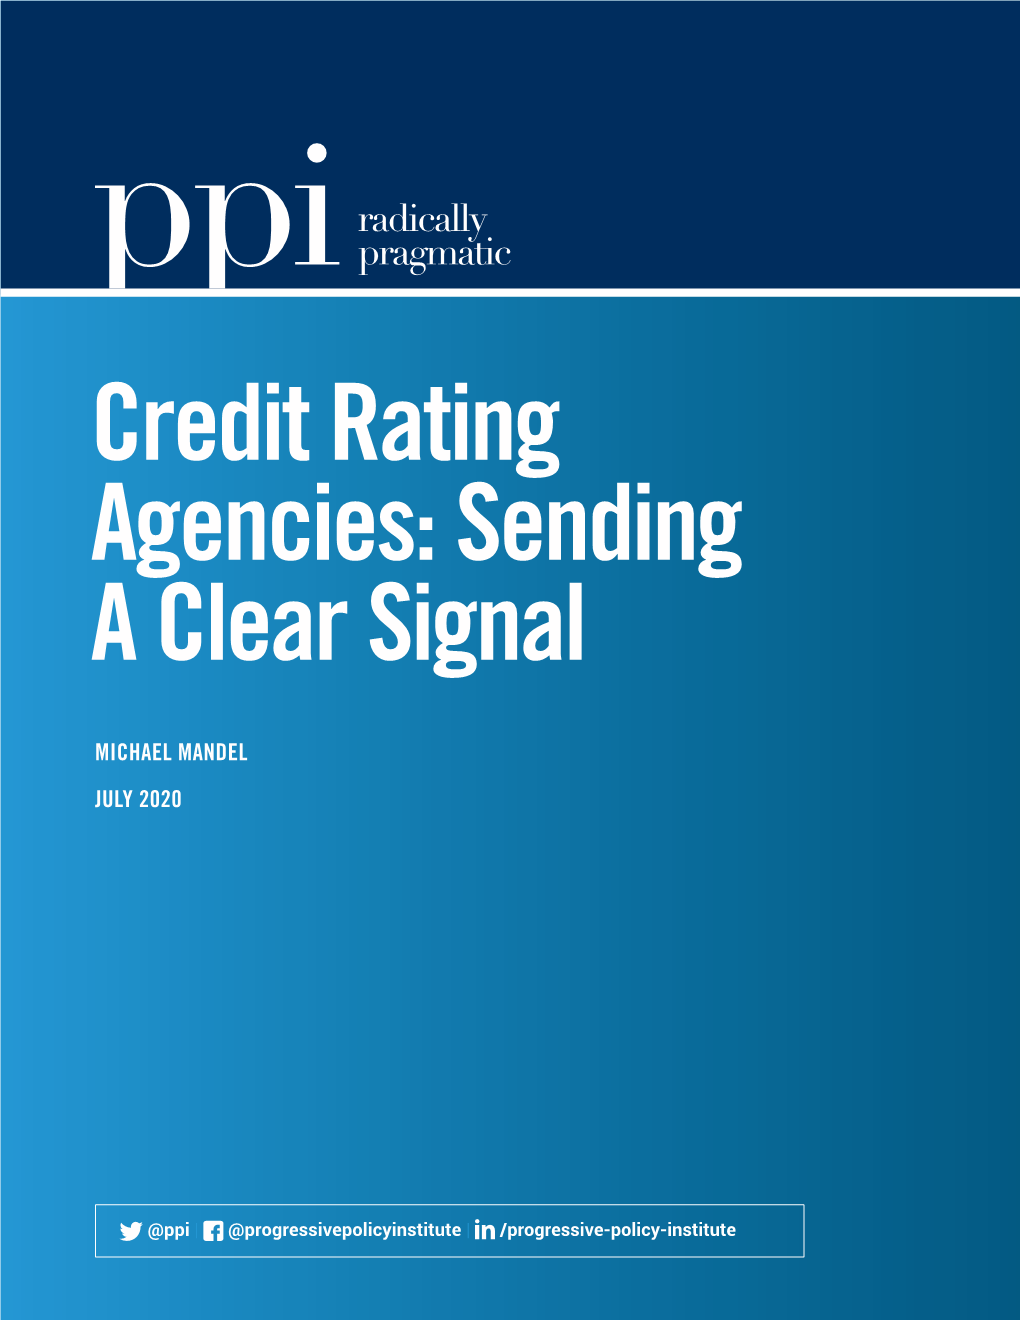 Credit Rating Agencies: Sending a Clear Signal